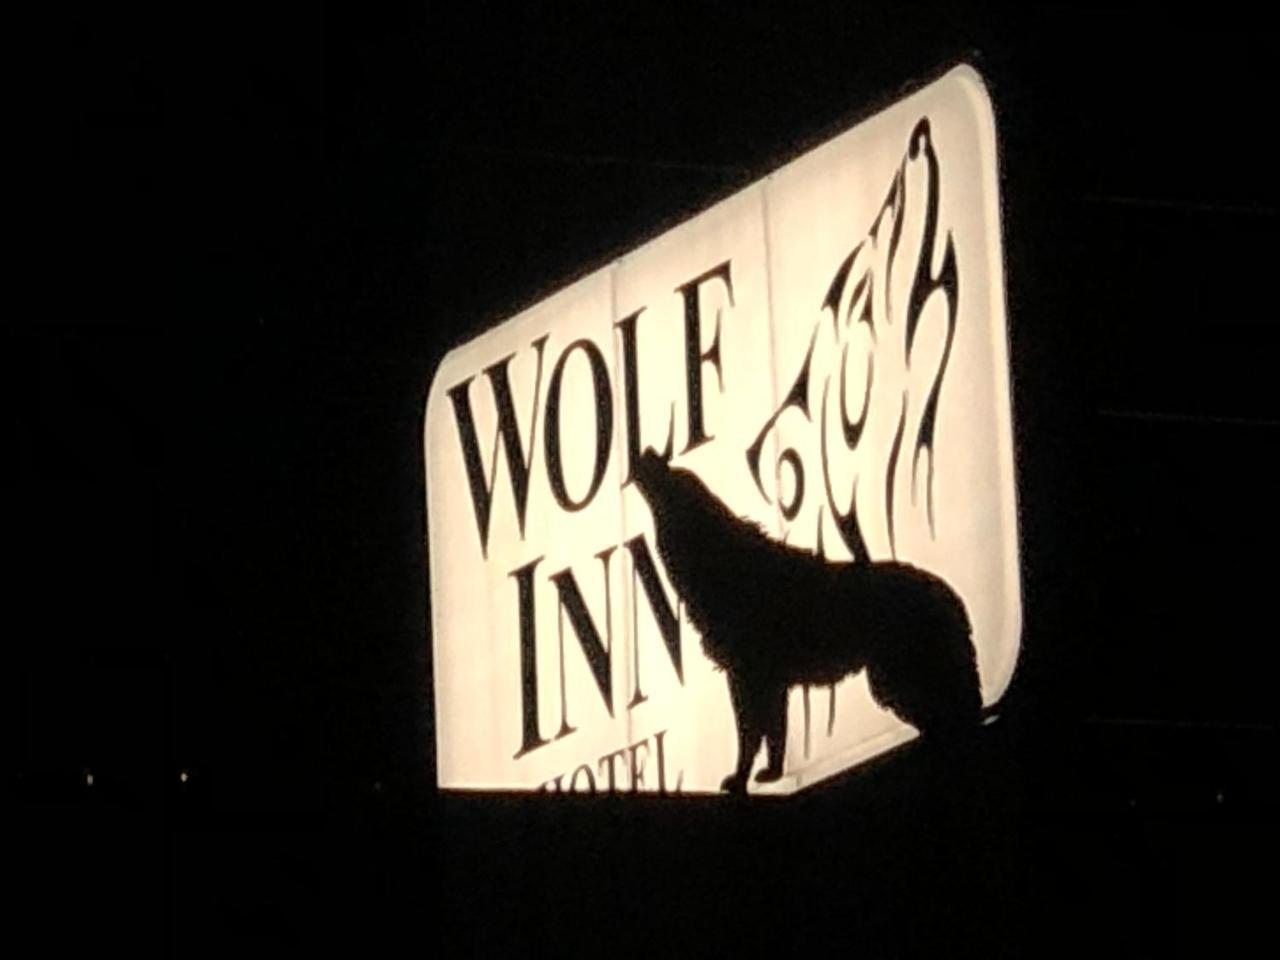 Wolf Inn Hotel 샌더스키 외부 사진